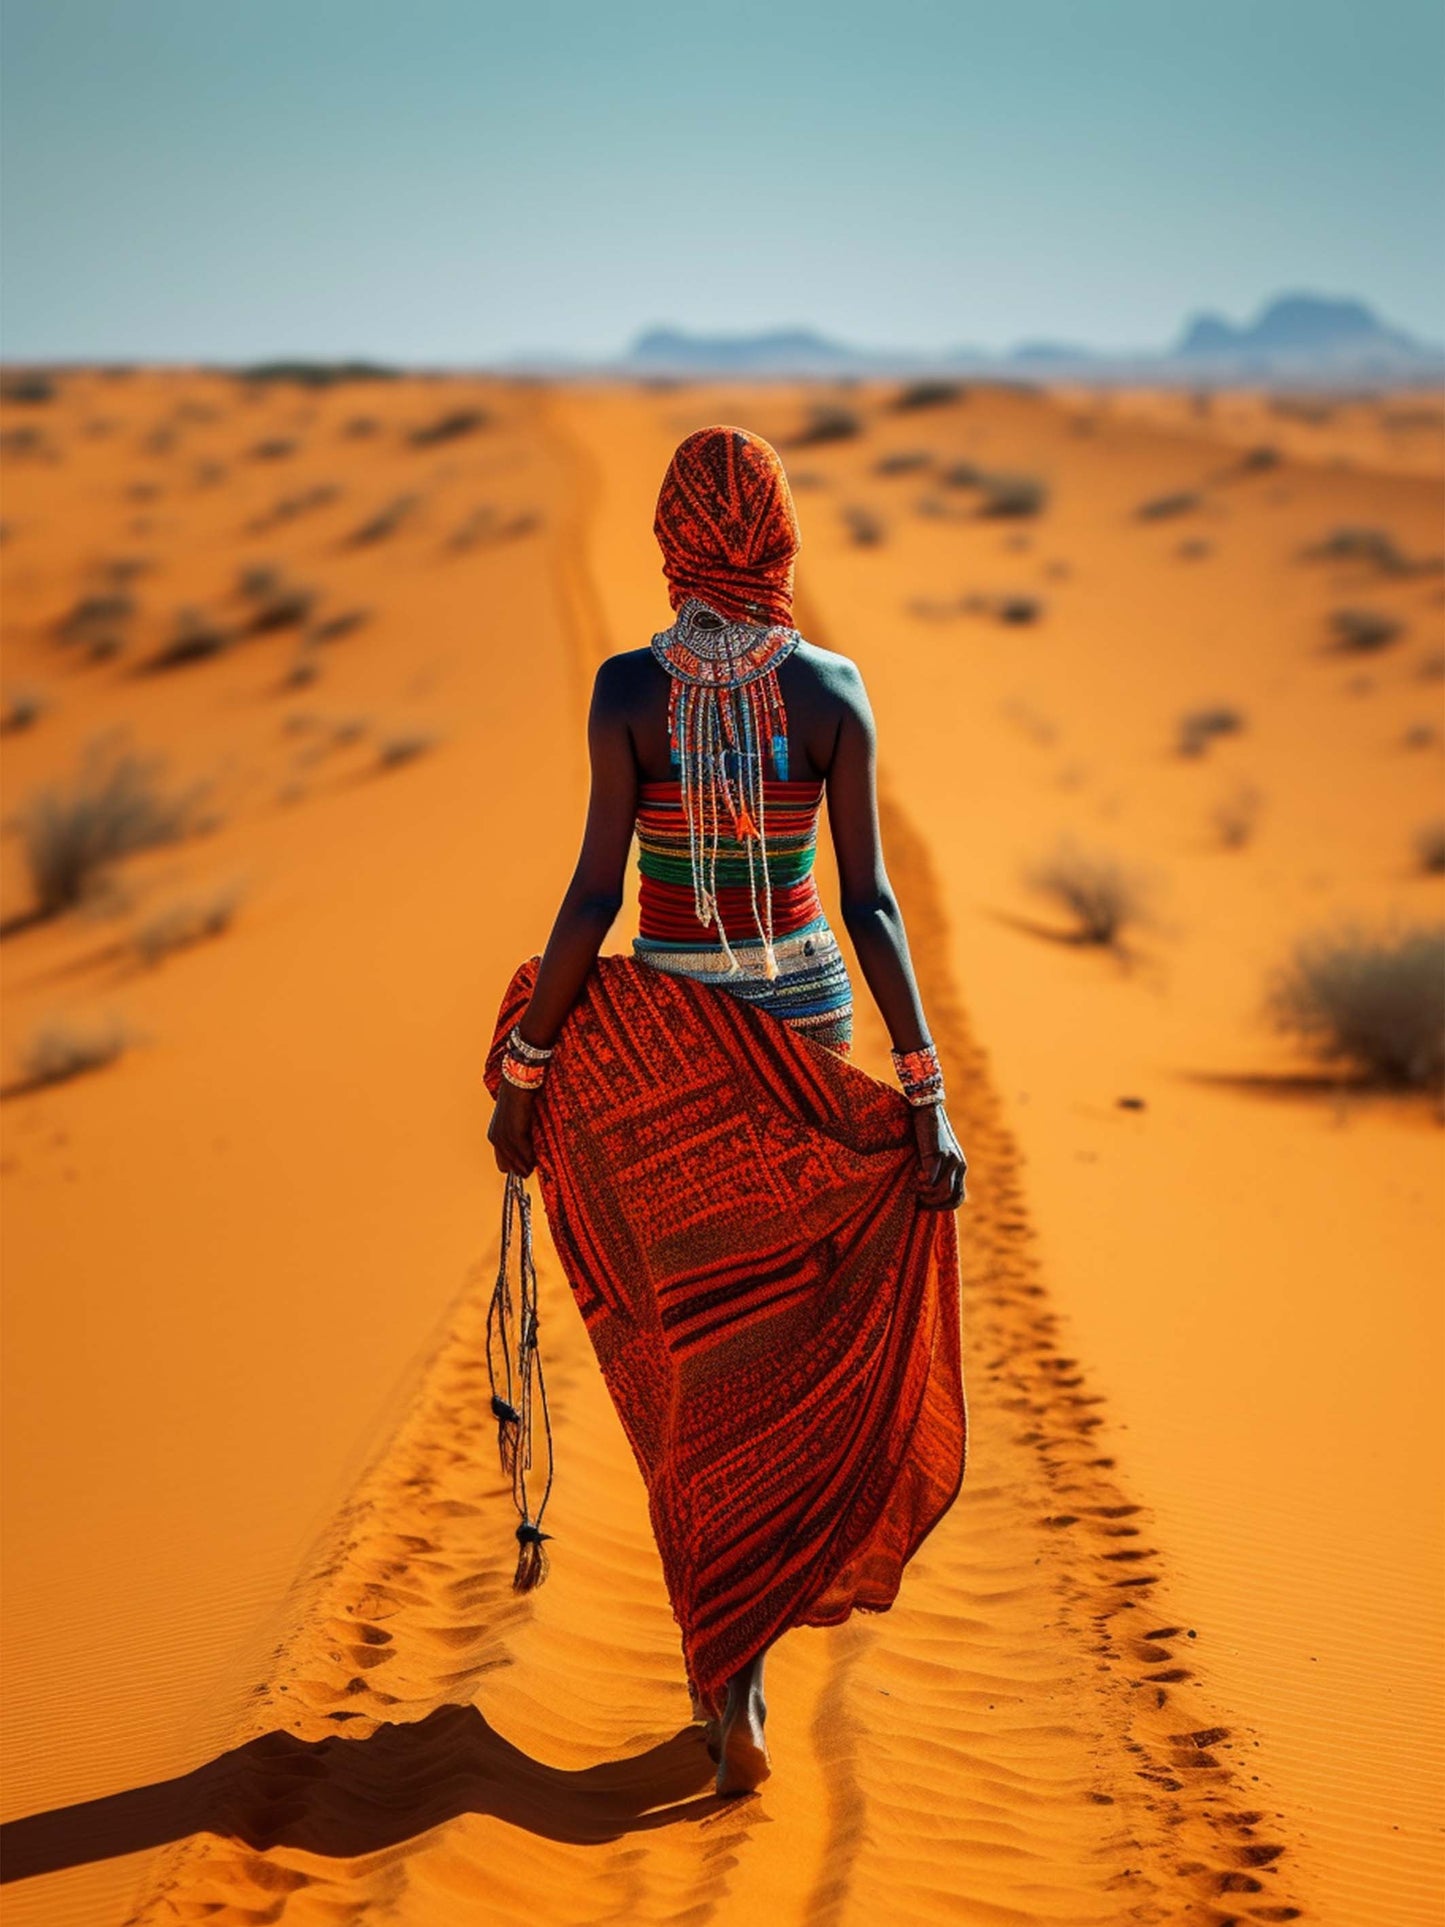 tableau femme de tribu ethnique traversant les dunes de sable orange, capturant l'esprit envoûtant du désert et la grâce de la culture africaine.